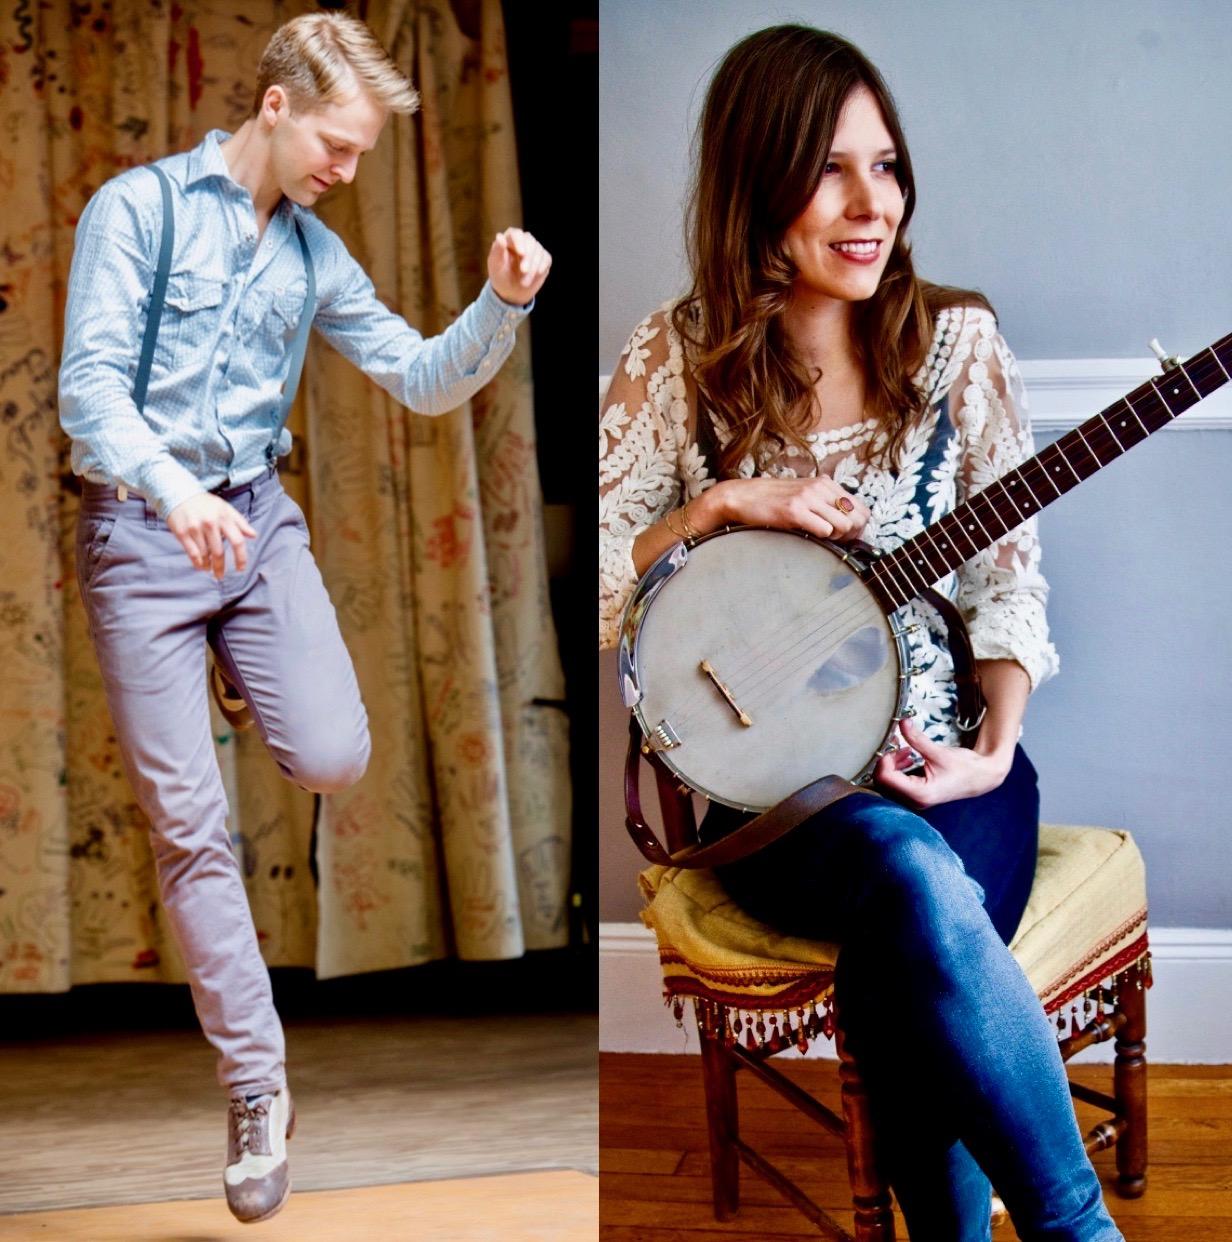 Banjo Meets Dance - Nic Gareiss and Allison de Groot